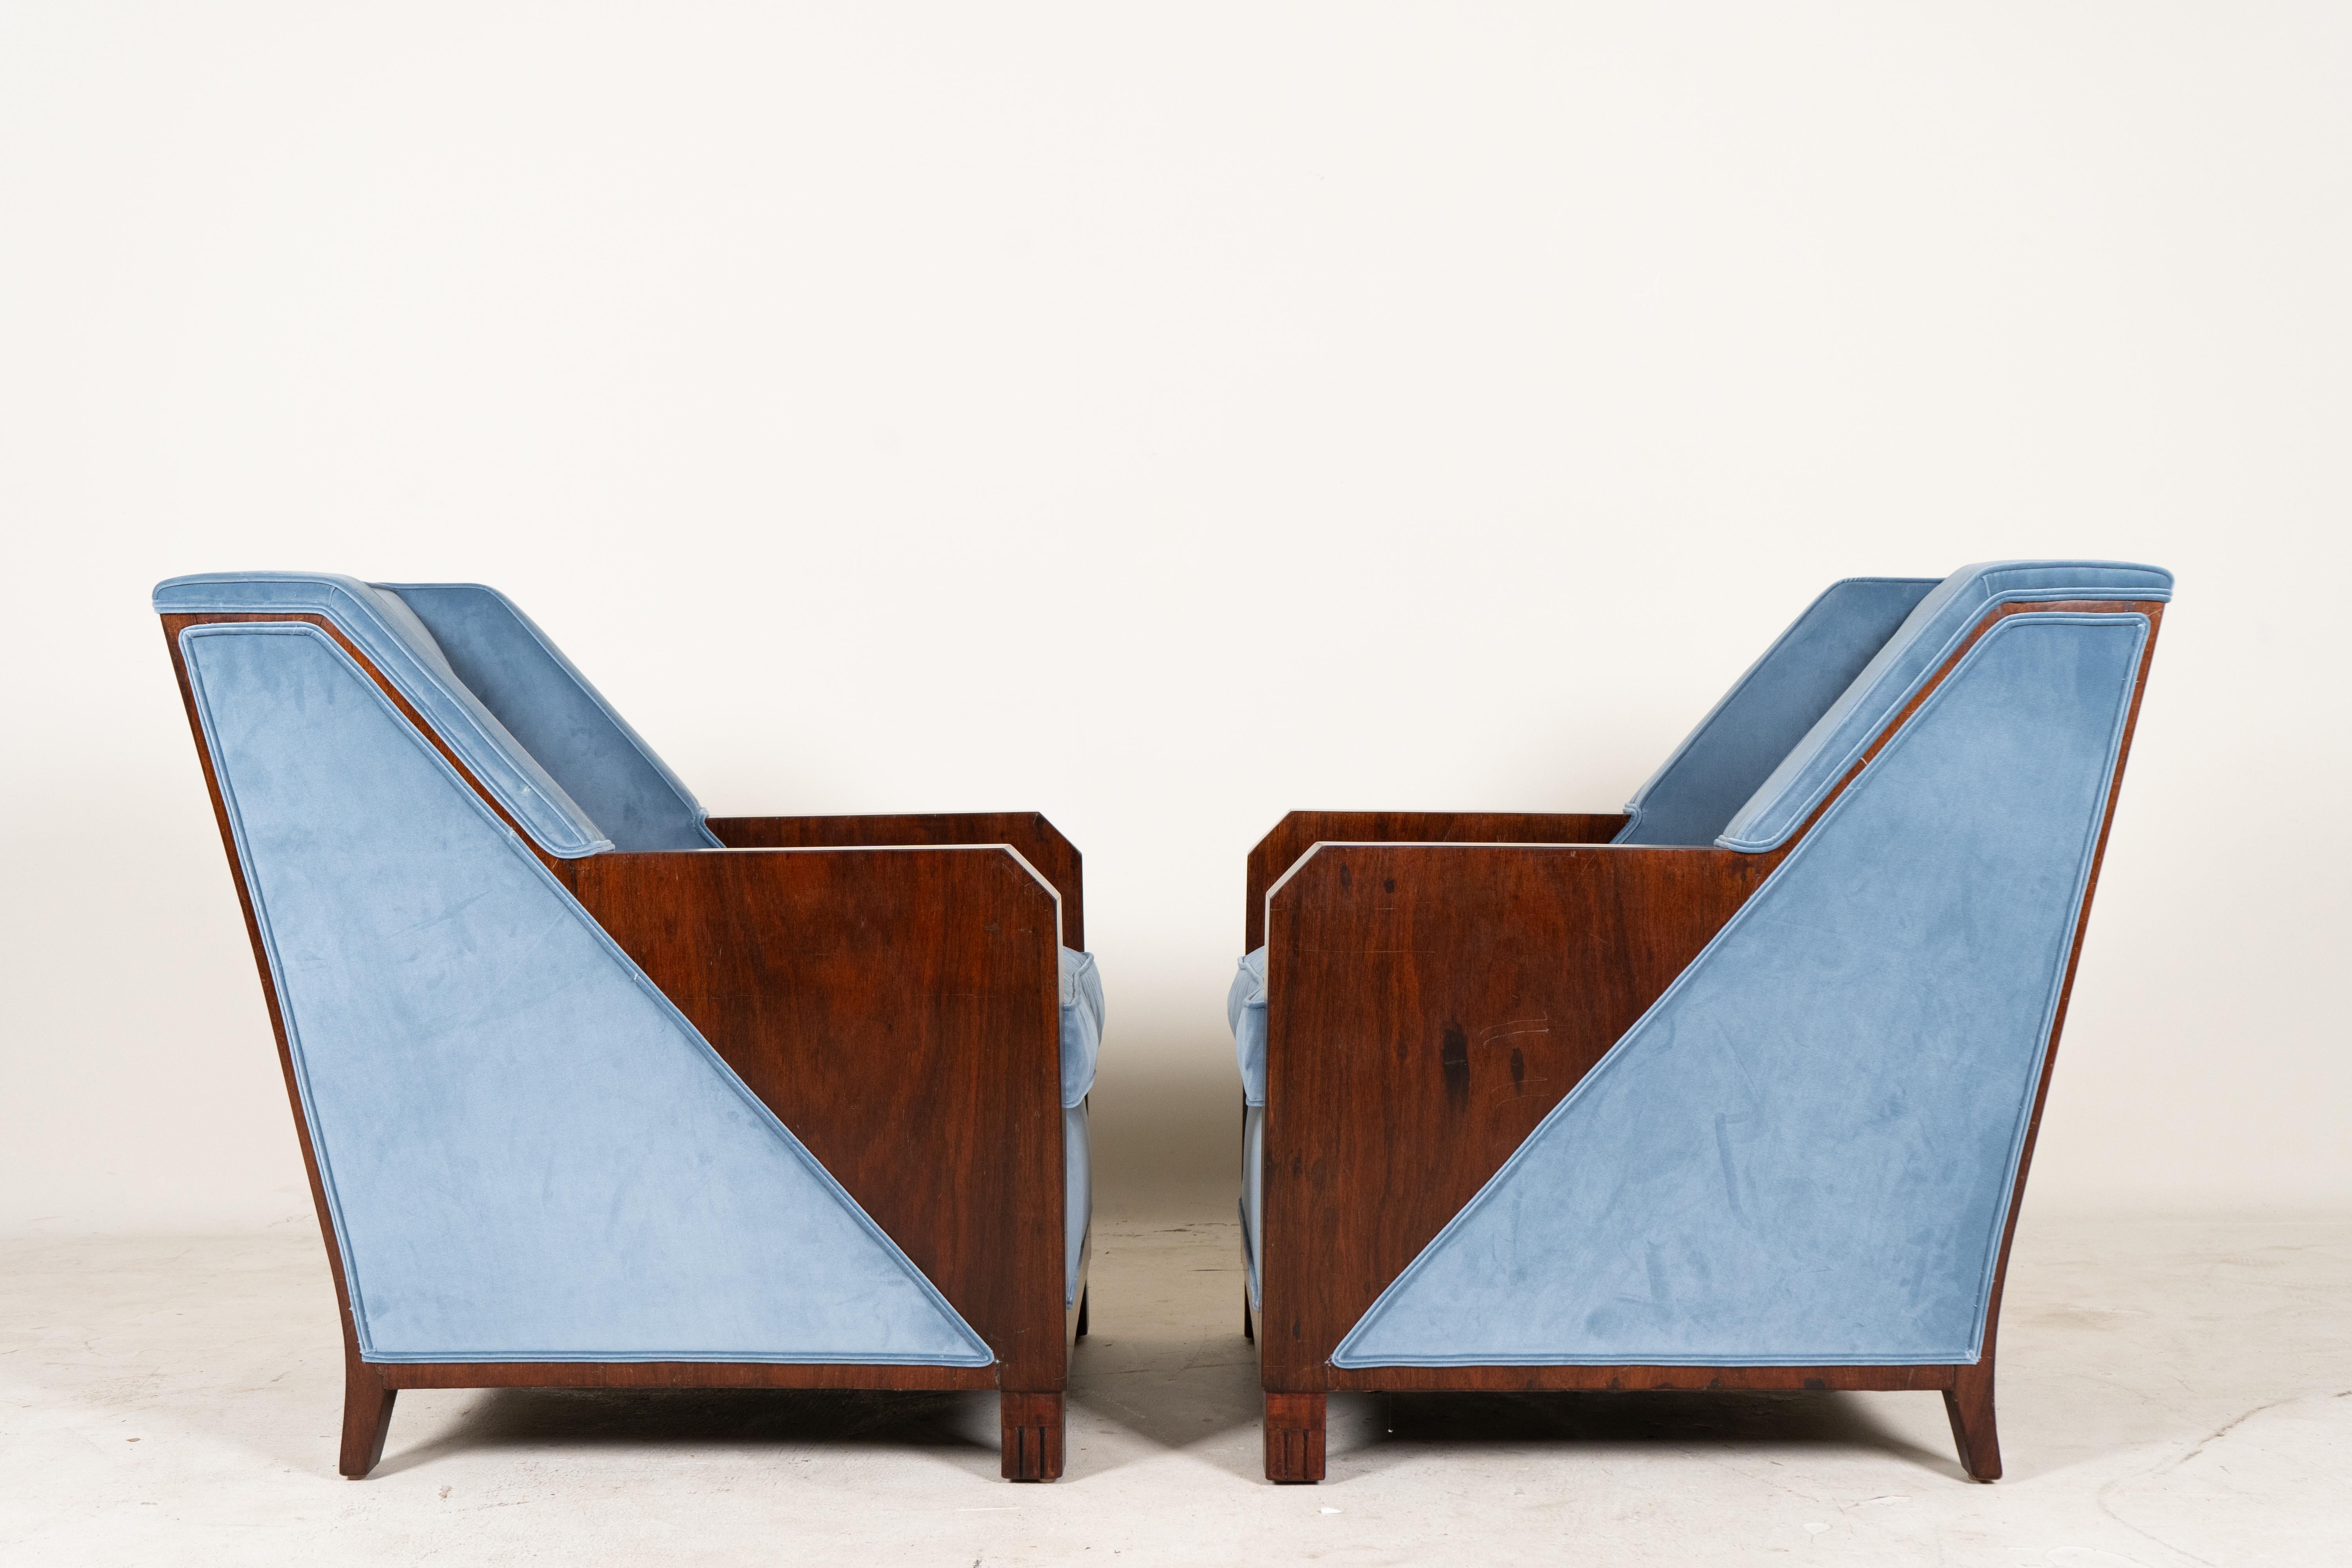 
Diese Stühle von Andre Domin und Marcel Genevriere für Maison Dominique sind exquisite Beispiele für das Design der Jahrhundertmitte, das auf die späten 1940er Jahre zurückgeht. Ihre schlanken Linien und die anspruchsvolle Handwerkskunst verkörpern